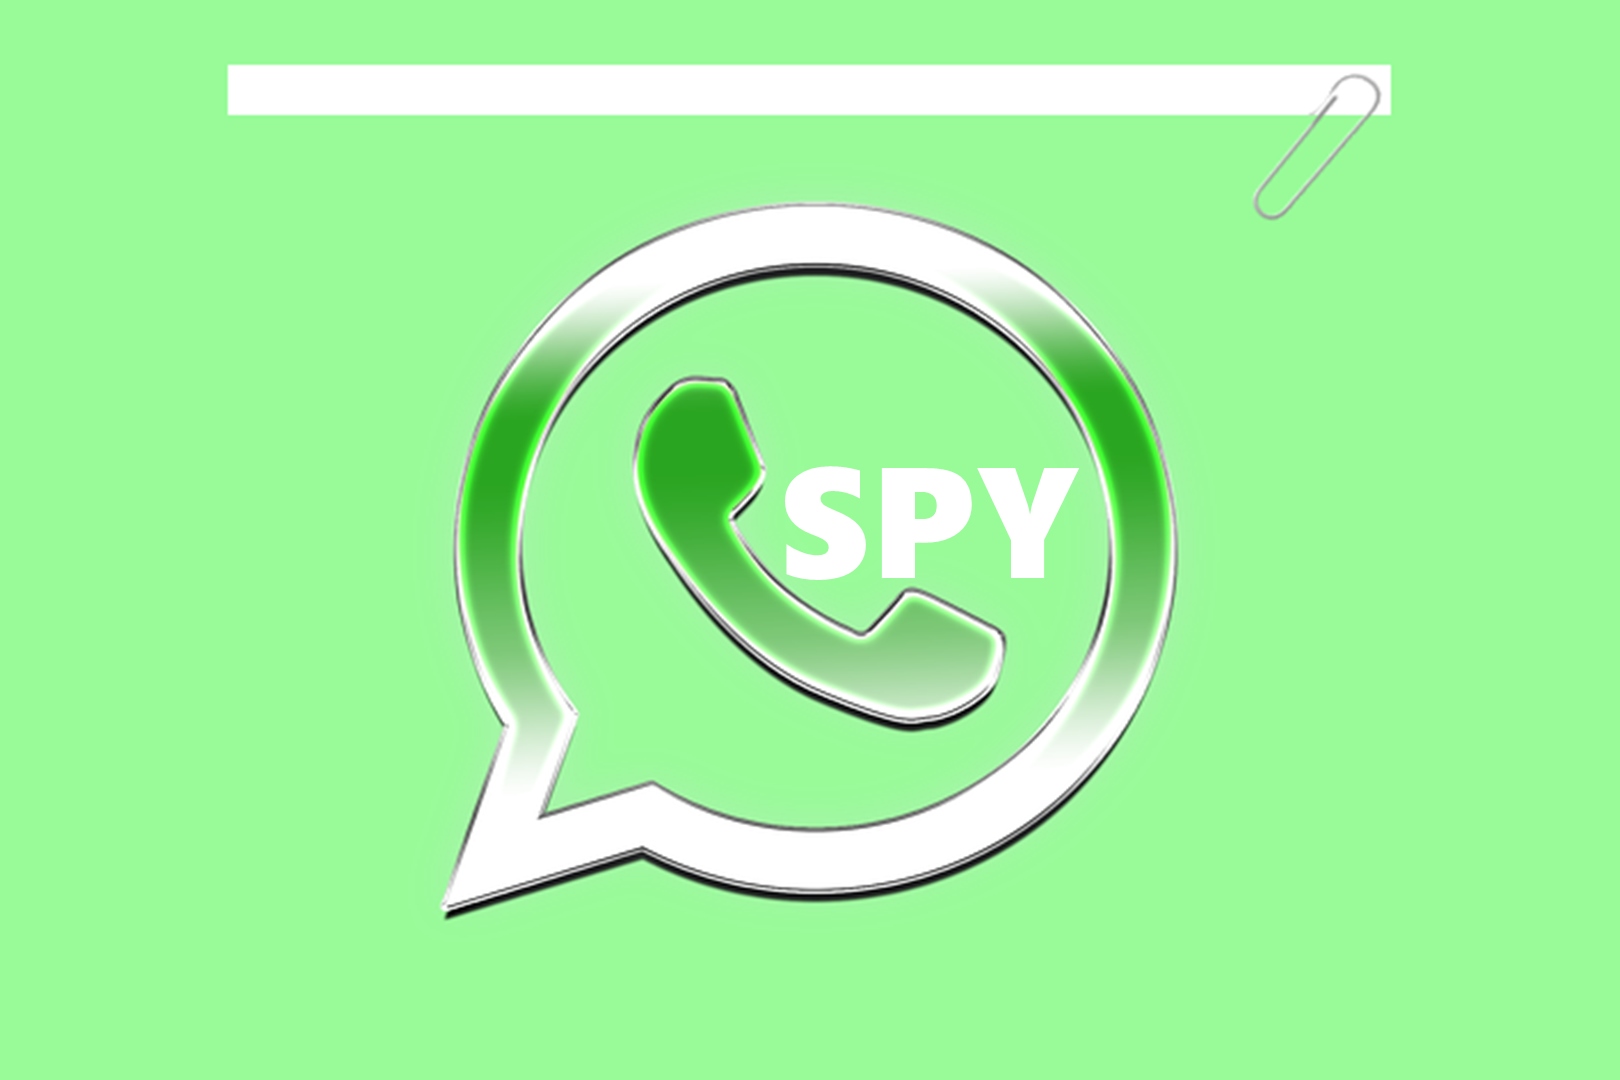 Sadap Whatsapp Mudah Dengan Social Spy Whatsapp, Bisa Lacak Panggilan Hingga Bongkar Isi Chatting